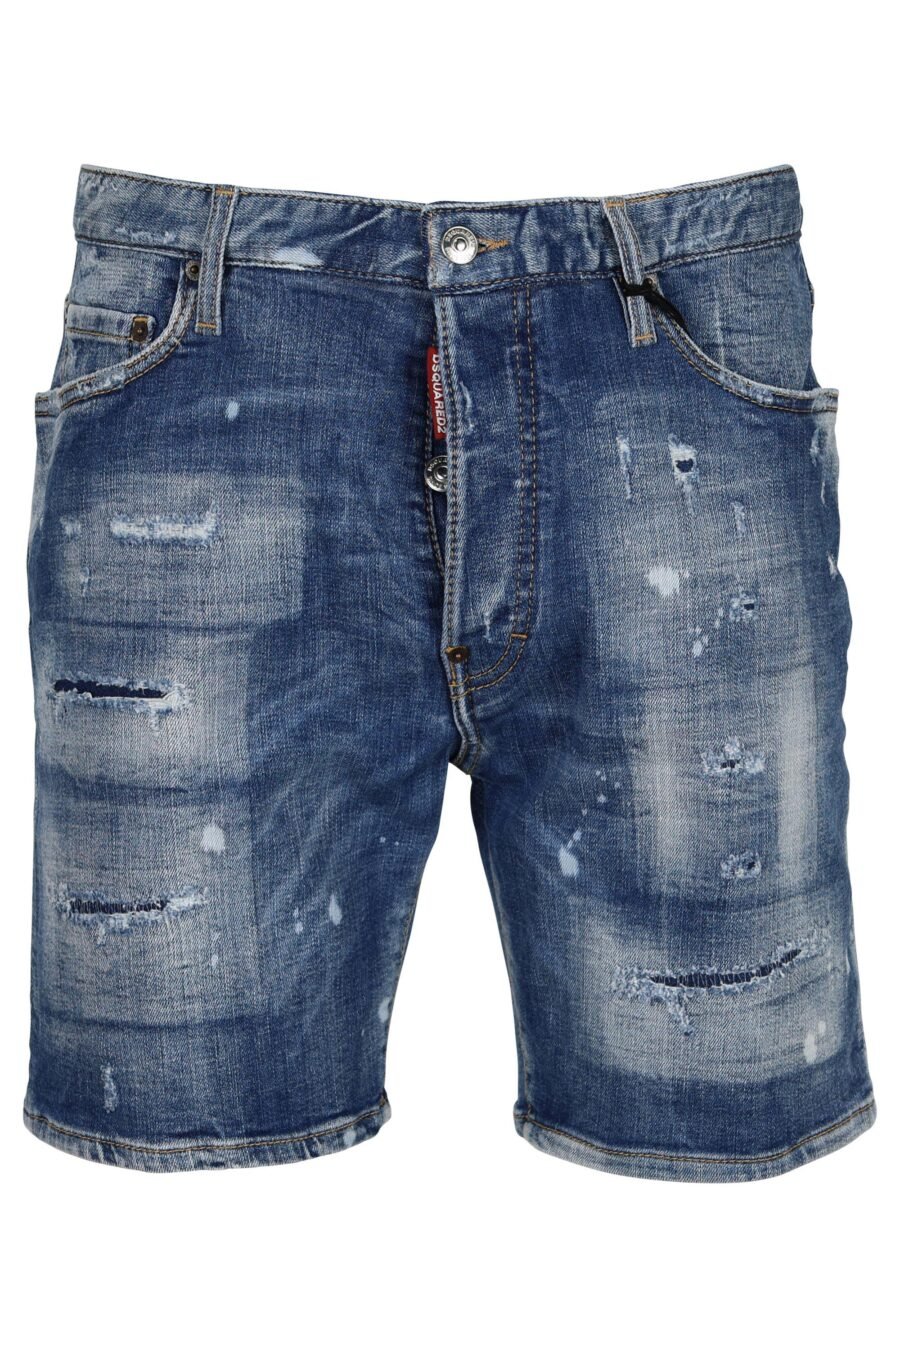 Pantalón vaquero corto azul claro "marine short" con rotos y desgastado - 8054148340193